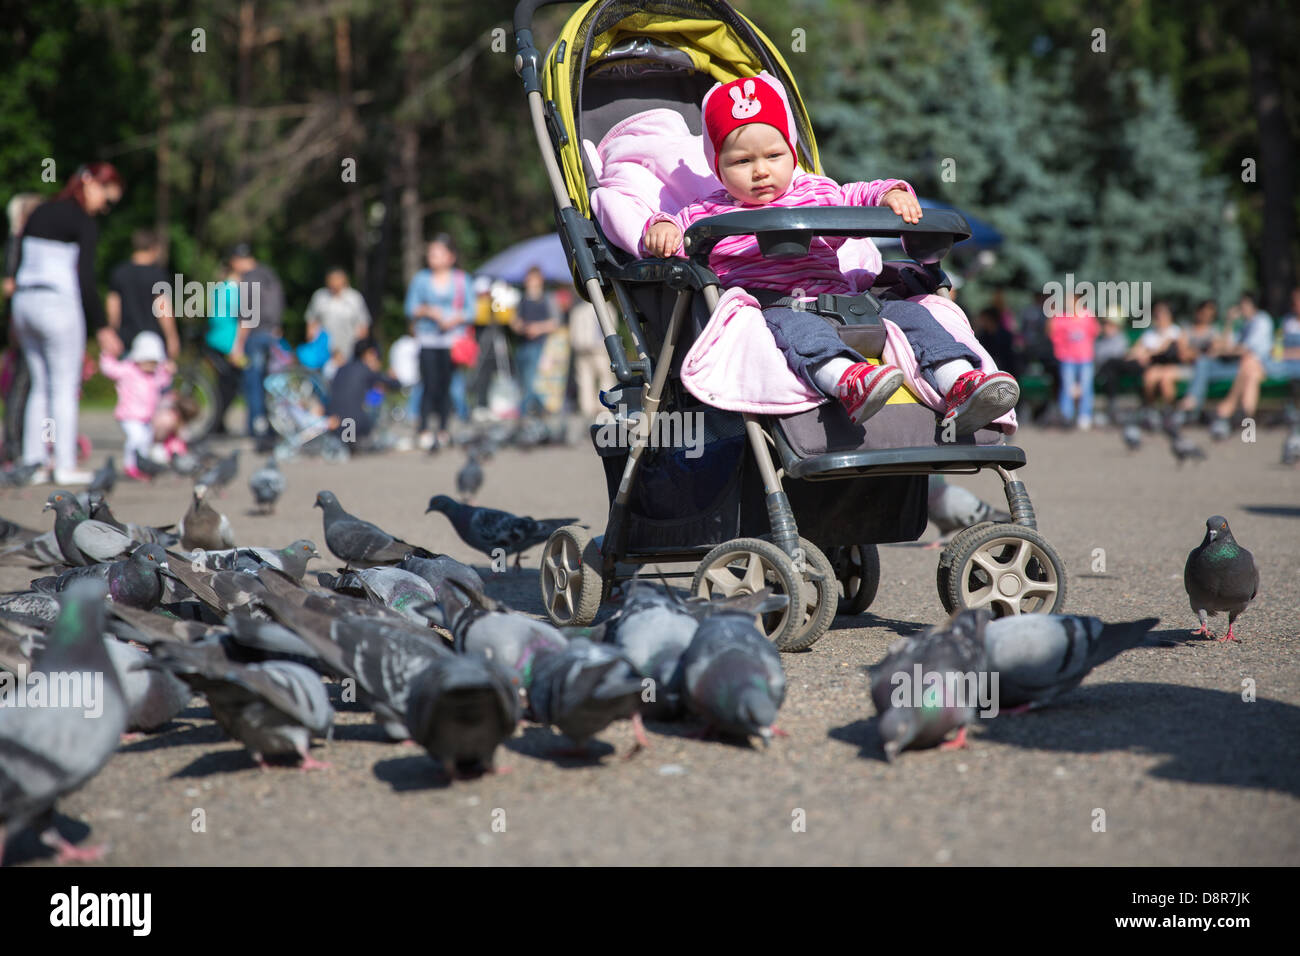 Enfant fille jouant avec des colombes dans la ville street Banque D'Images